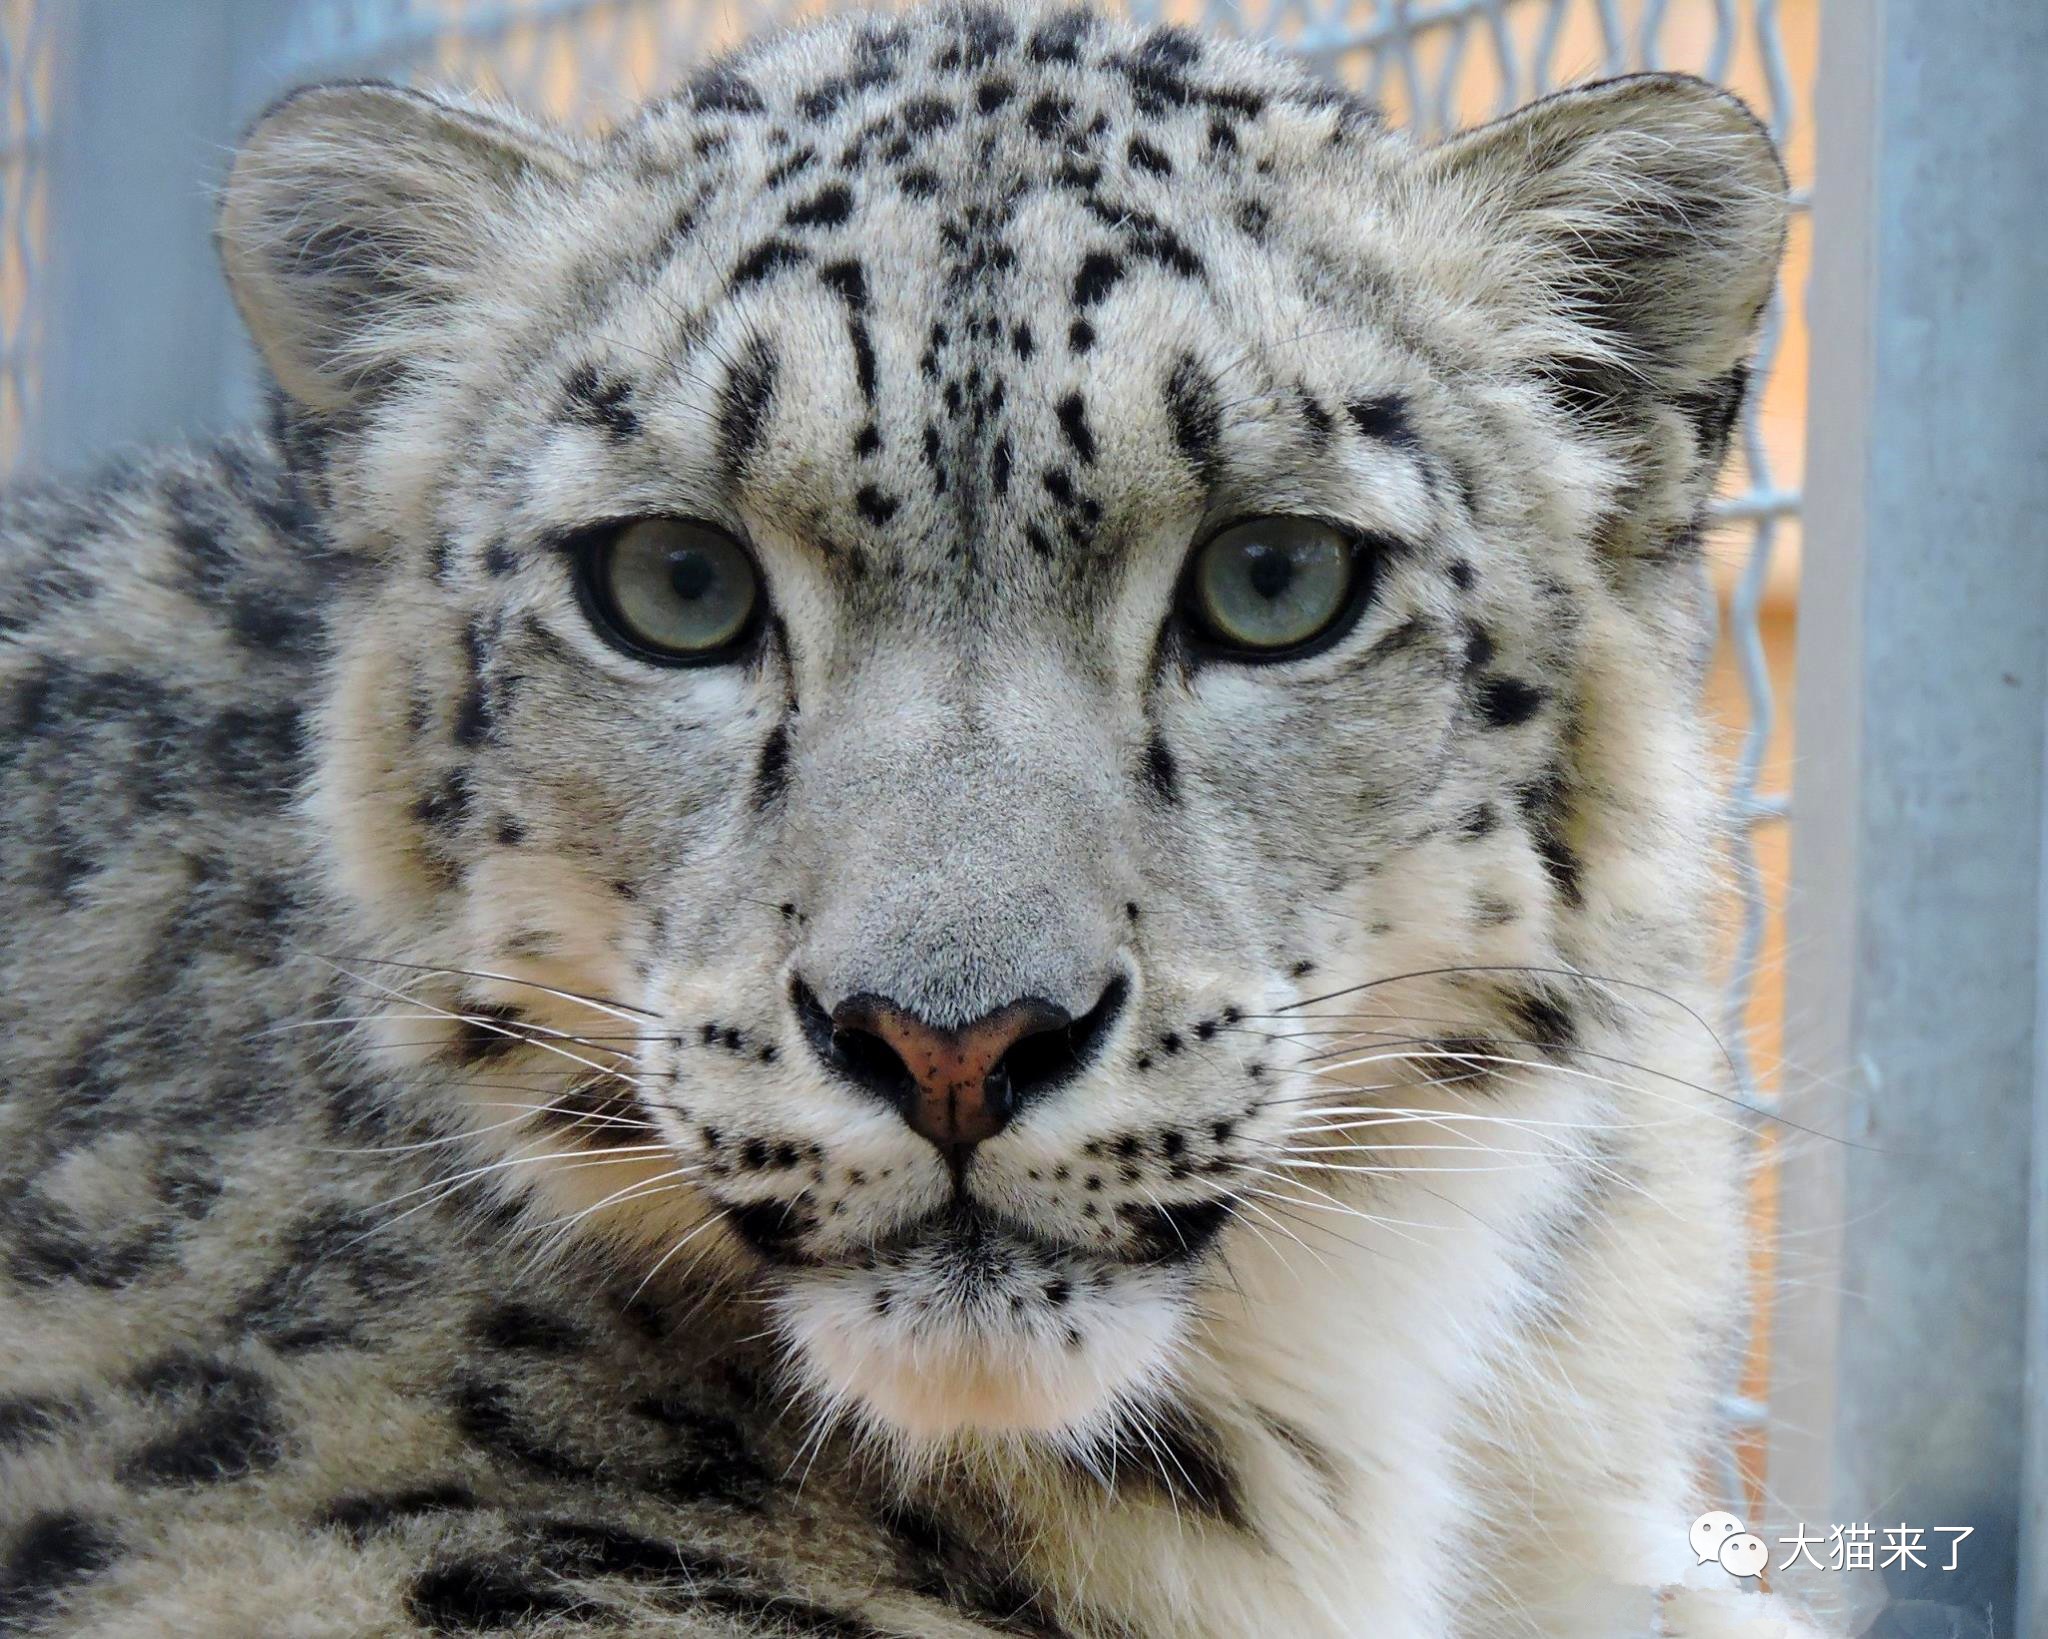 在这个看动物看脸的时代,很多人关注的是雪豹的长相